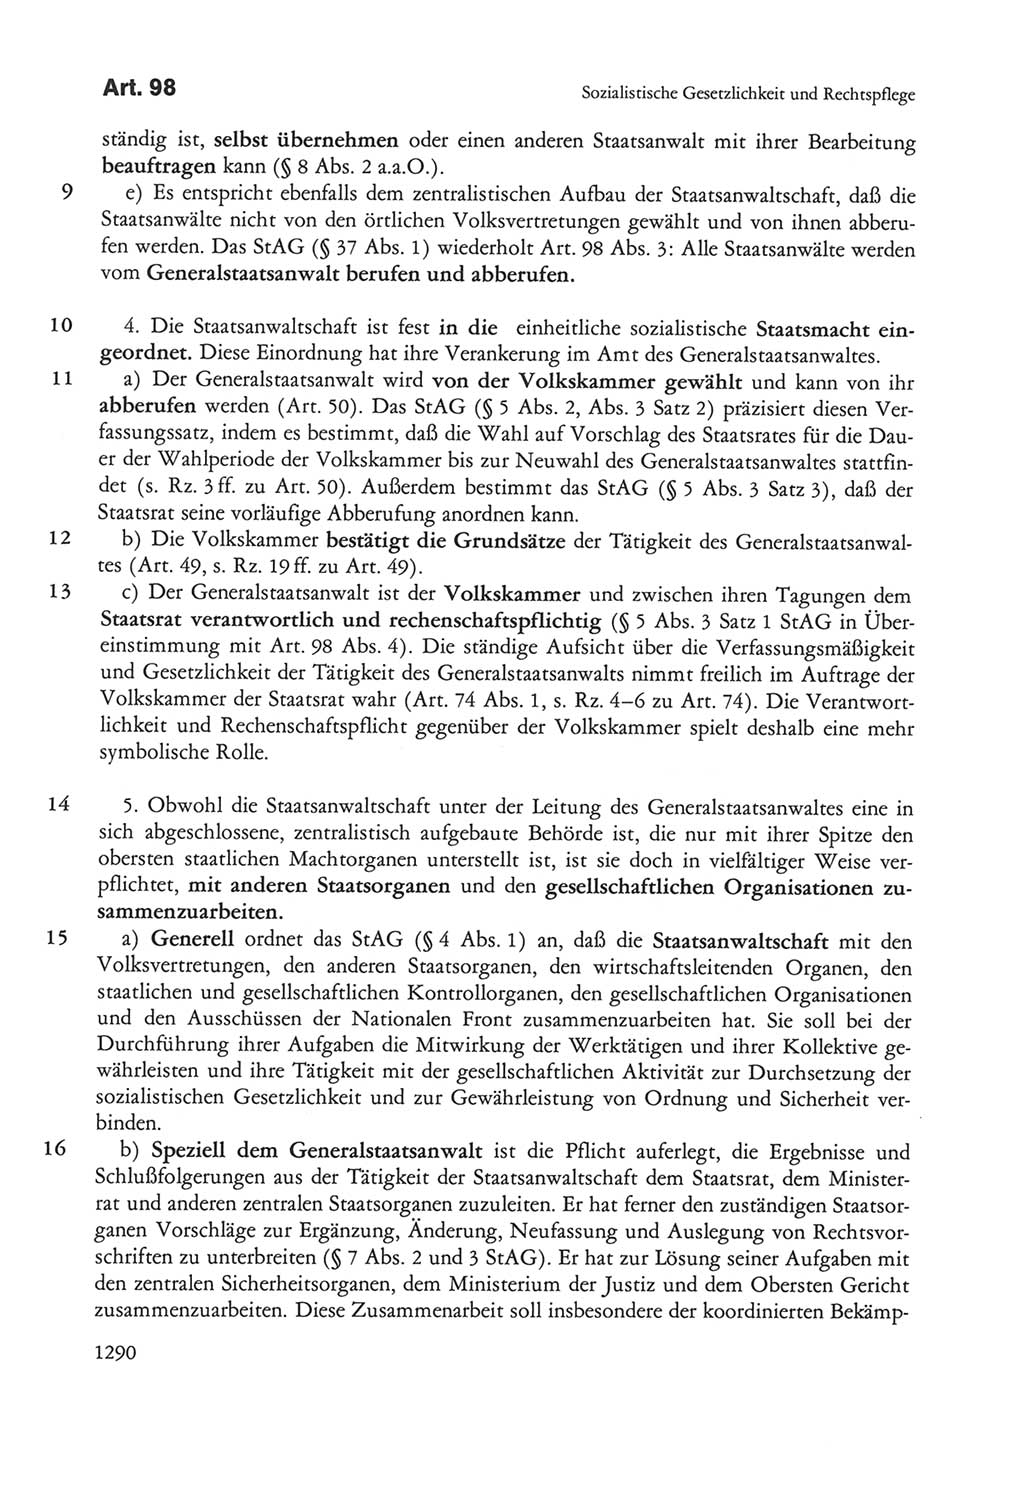 Die sozialistische Verfassung der Deutschen Demokratischen Republik (DDR), Kommentar 1982, Seite 1290 (Soz. Verf. DDR Komm. 1982, S. 1290)